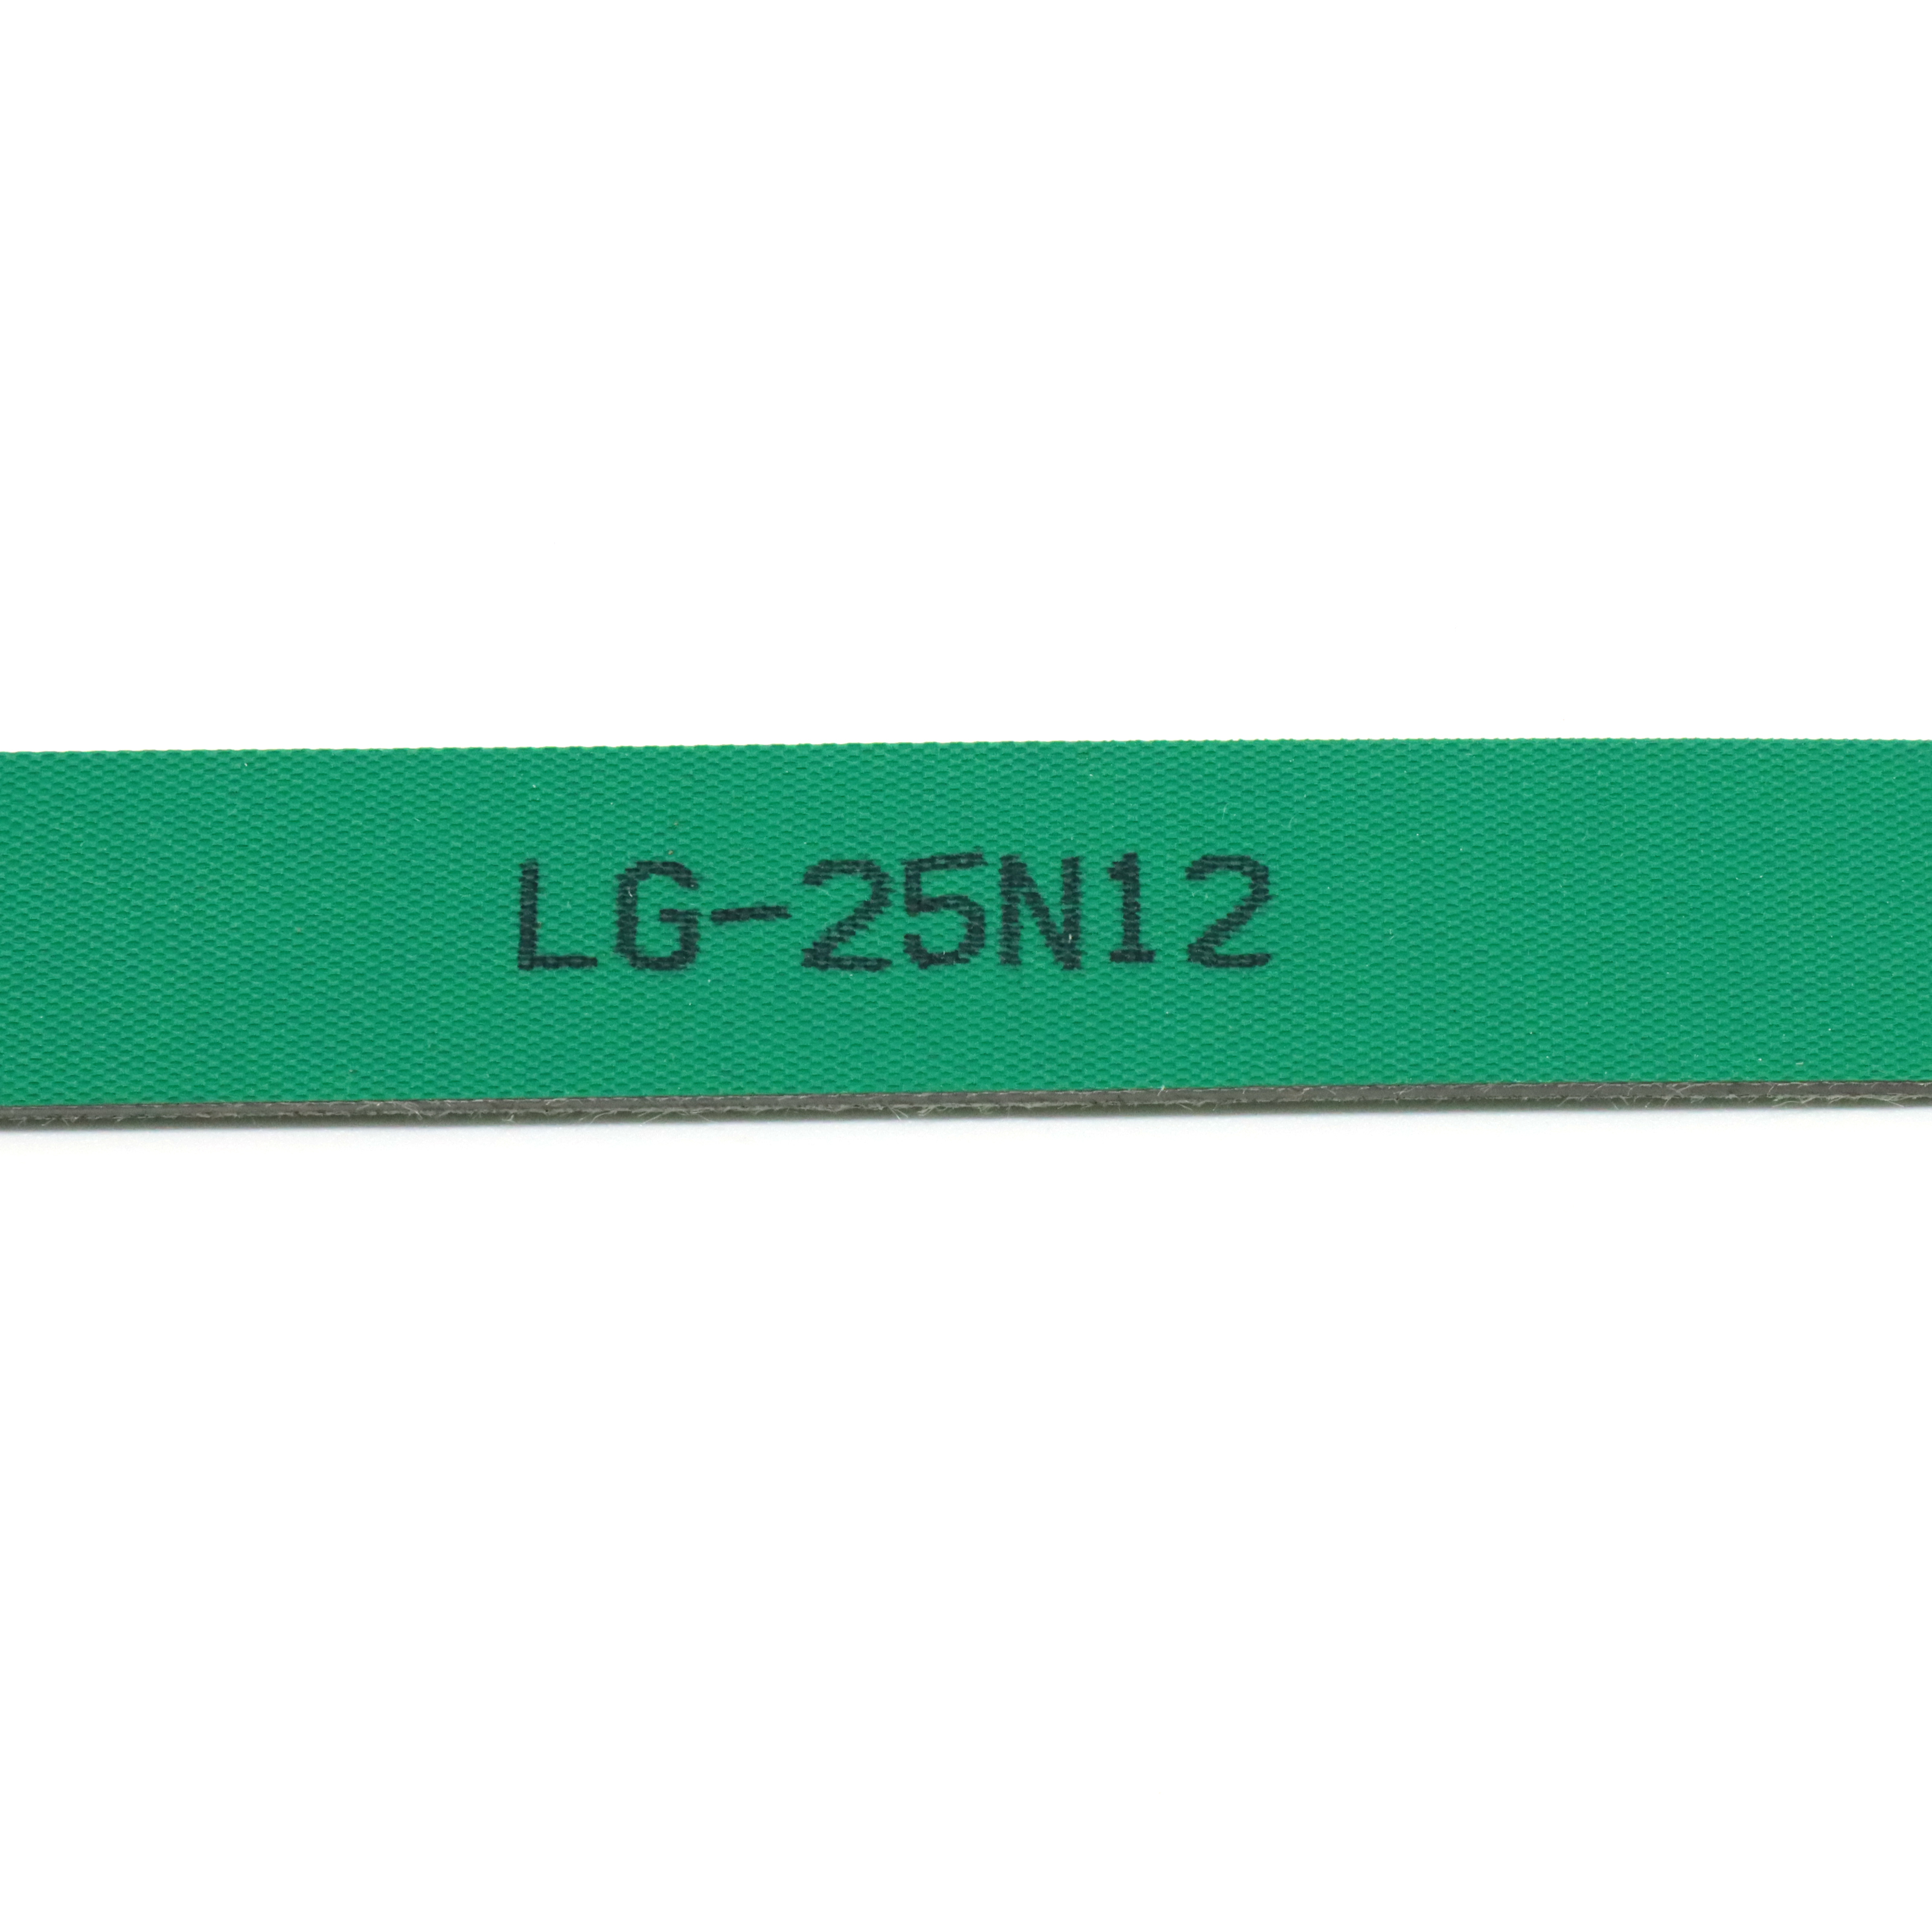 LG-25N12